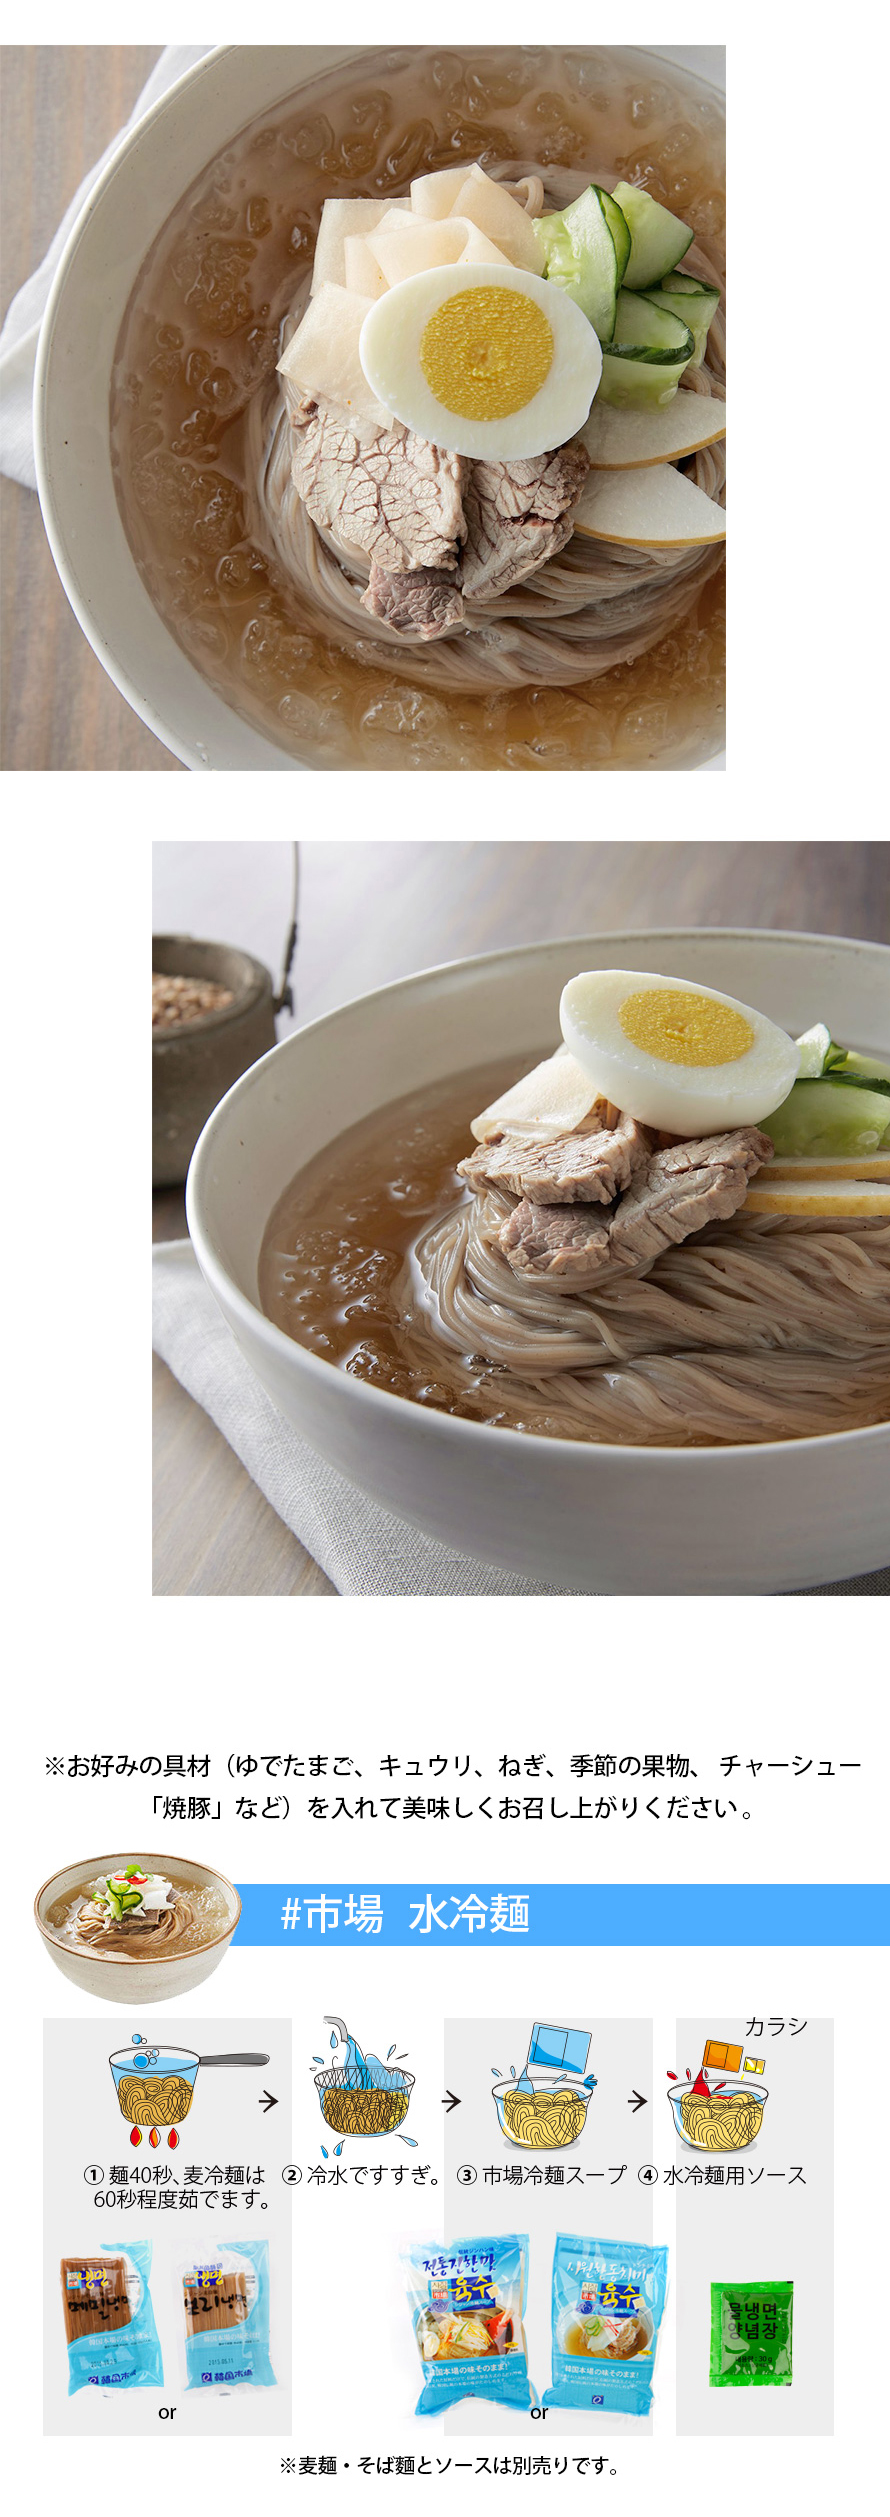 [市場]冷麺スープ(トンチミ味)340g/韓国商品 韓国食材 韓国冷麺 韓国スープ